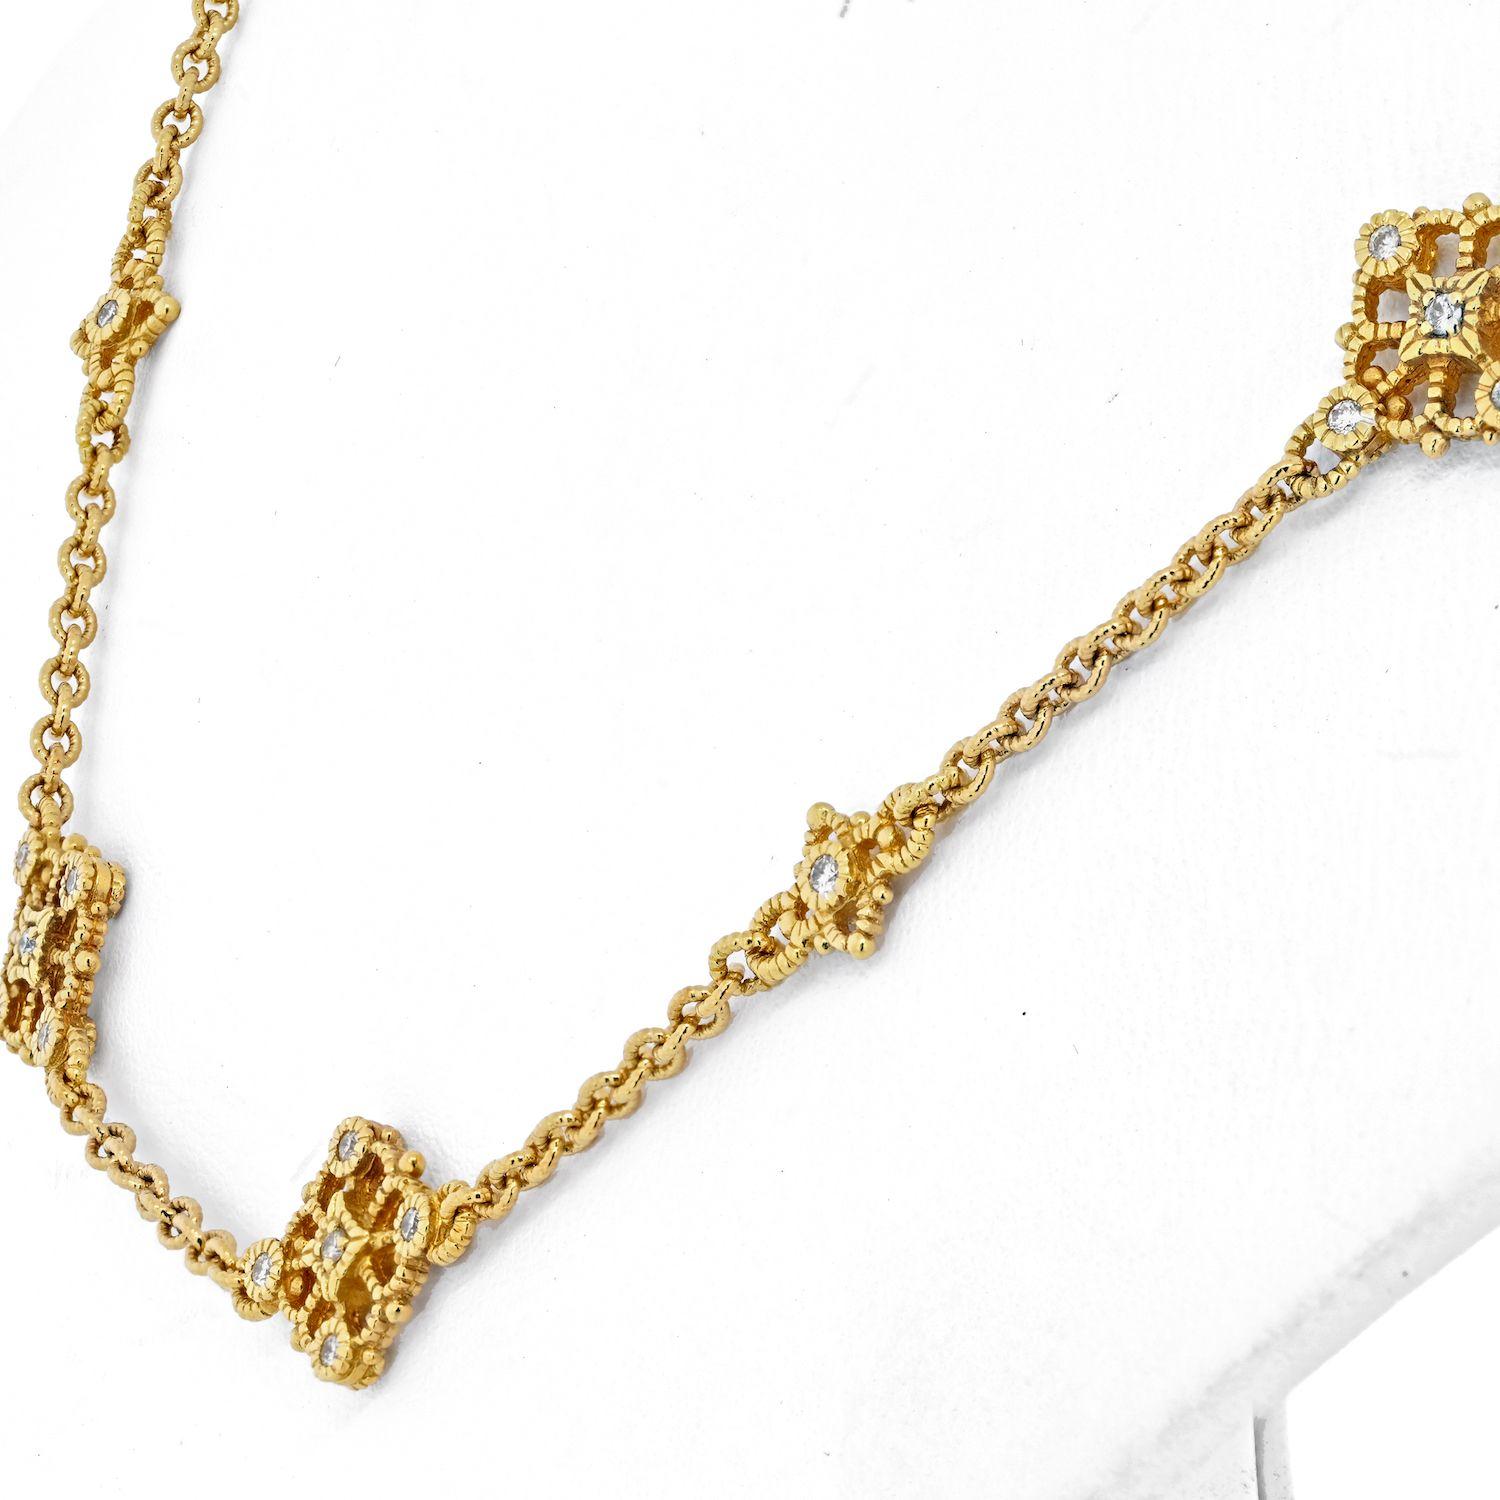 Women's or Men's Judith Ripka 18K Yellow Gold Necklace & Earrings Jewelry Set